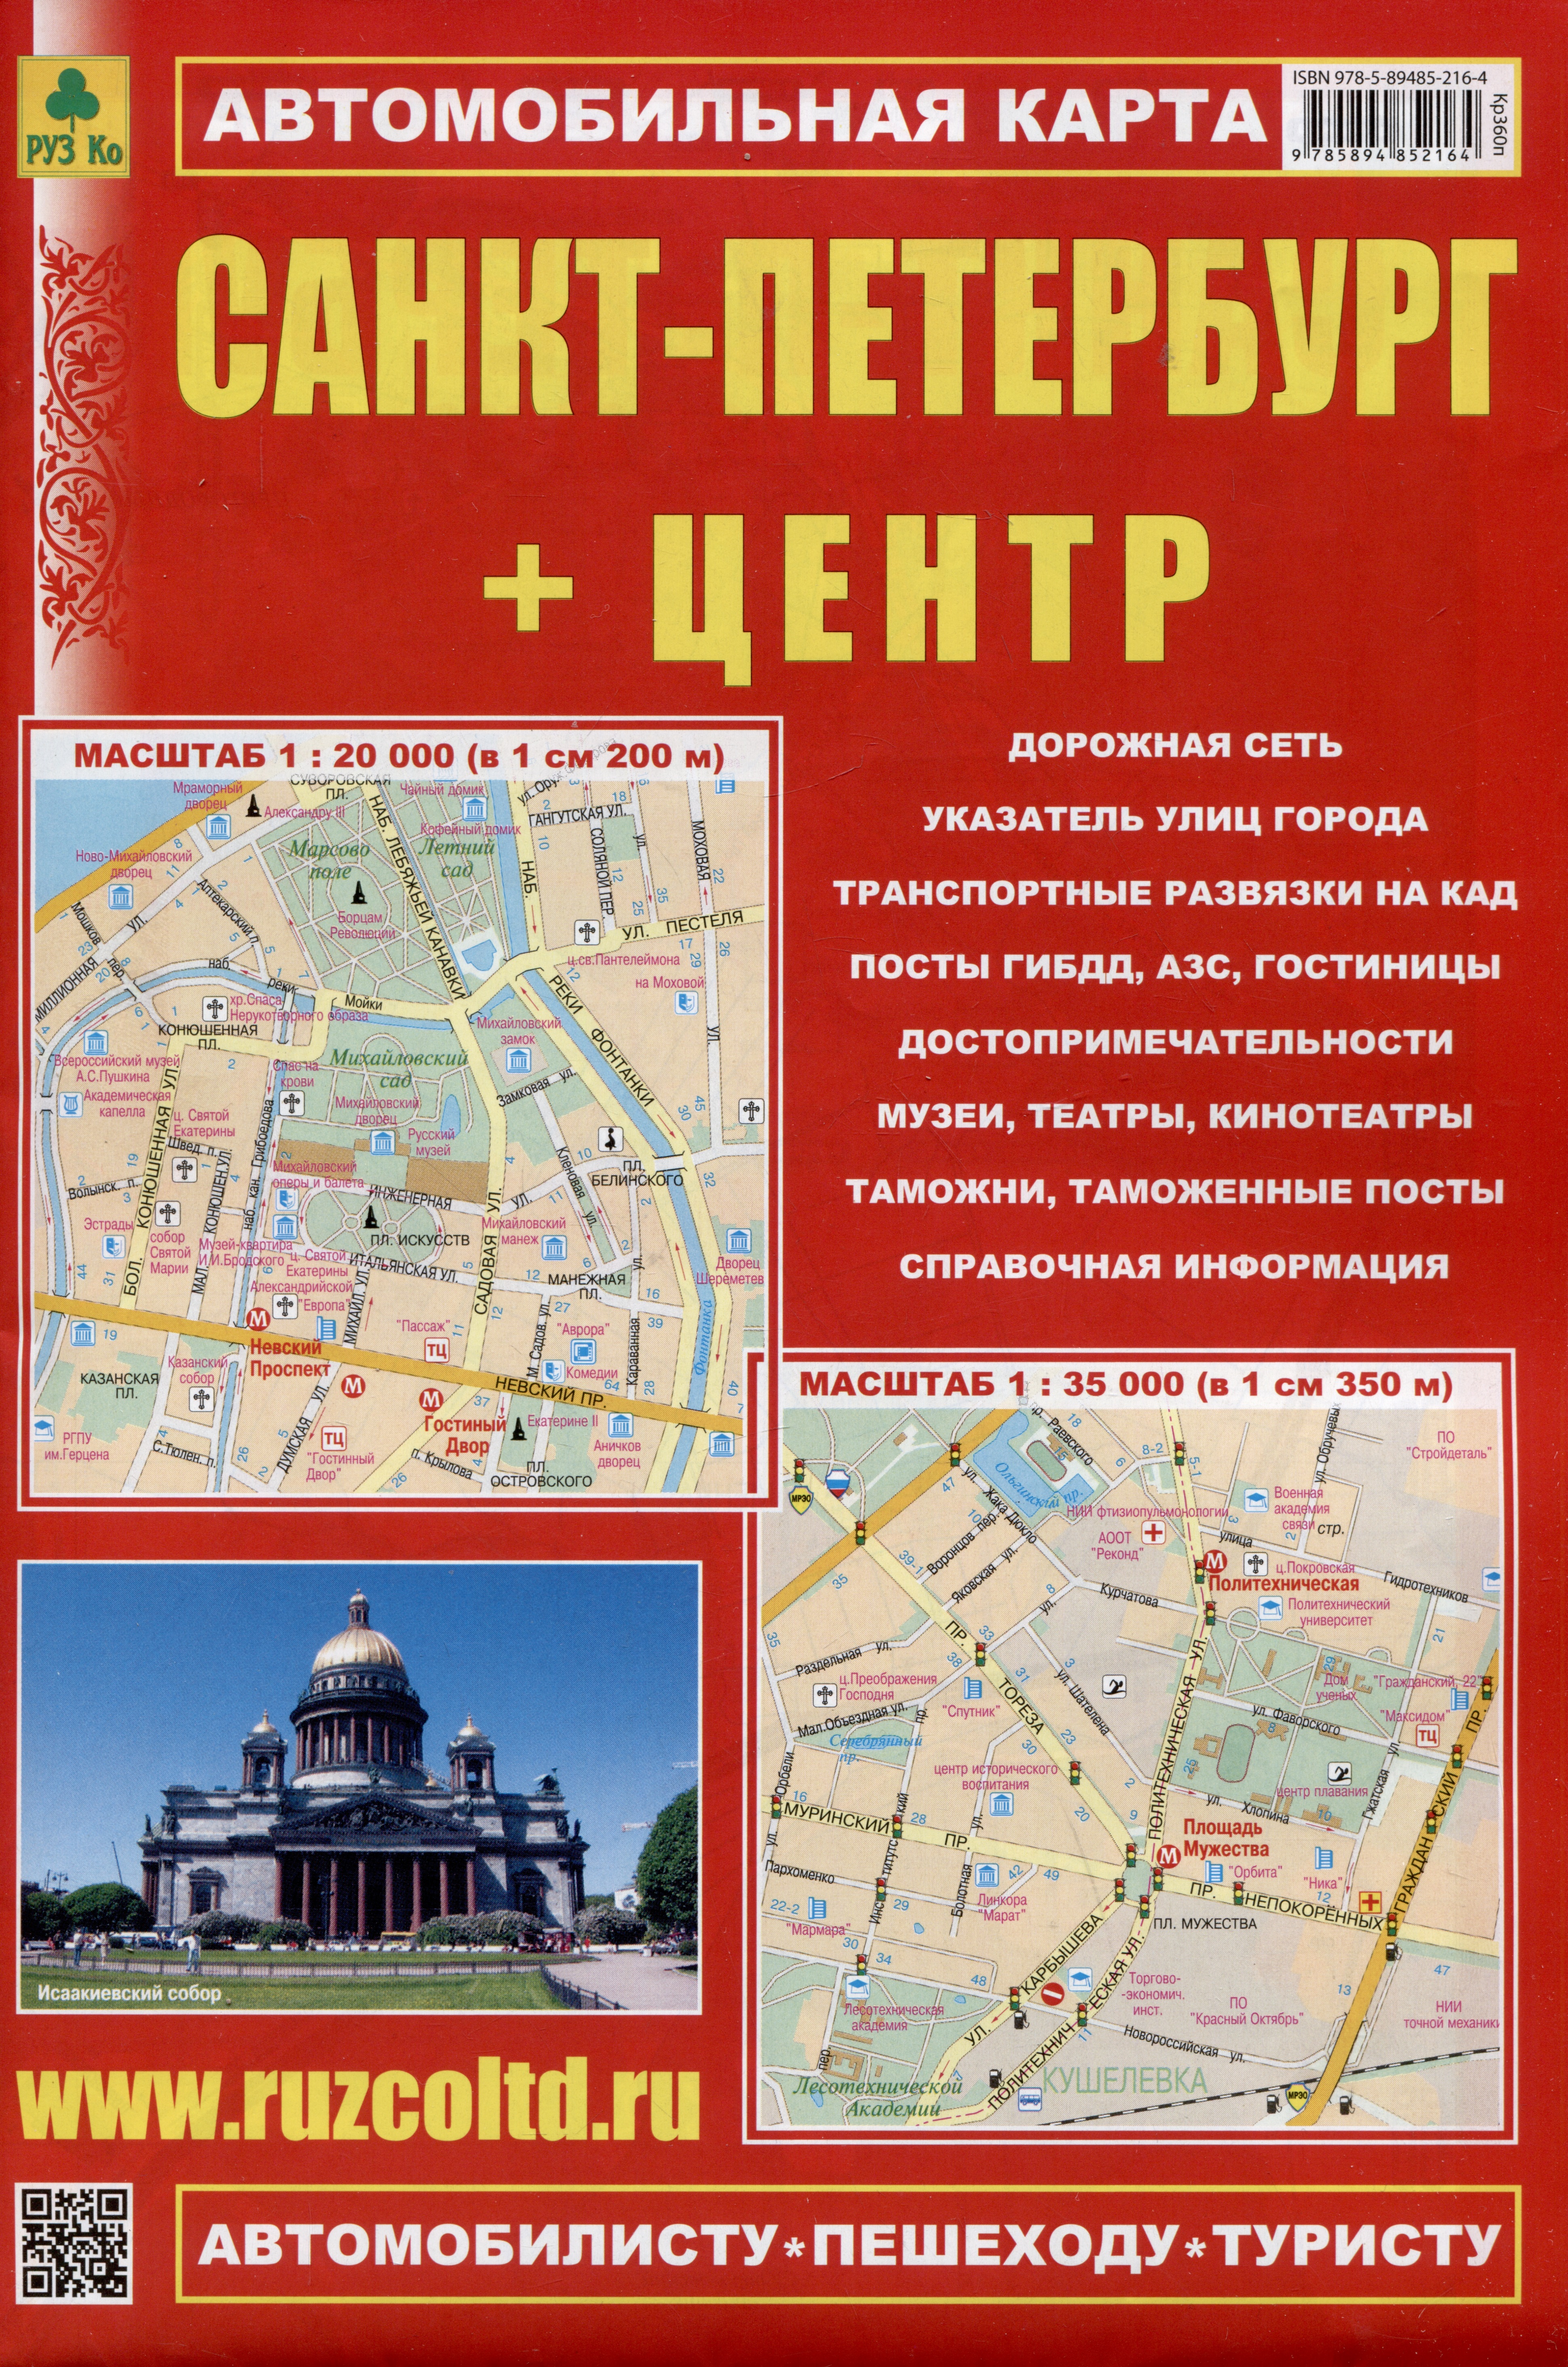 очень большая раскраска карта санкт петербурга Санкт-Петербург + Центр. Автомобильная карта. Карта города (1:35 000), карта центра (1:20 000) + схема метро